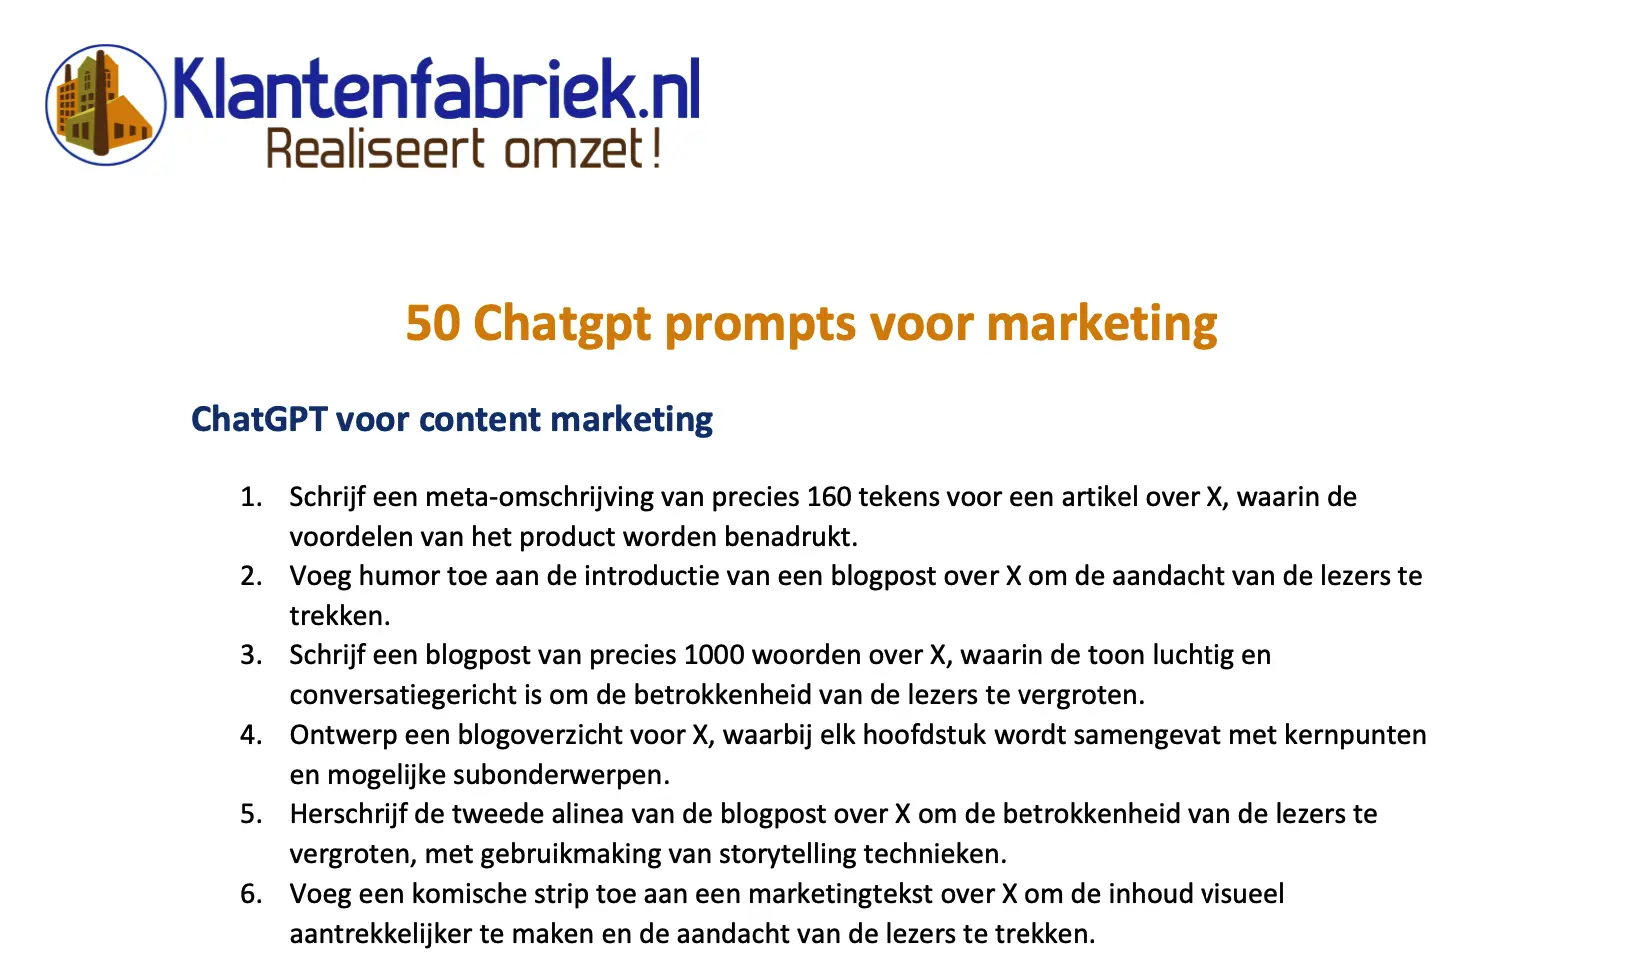 50 ChatGPT prompts voor marketing